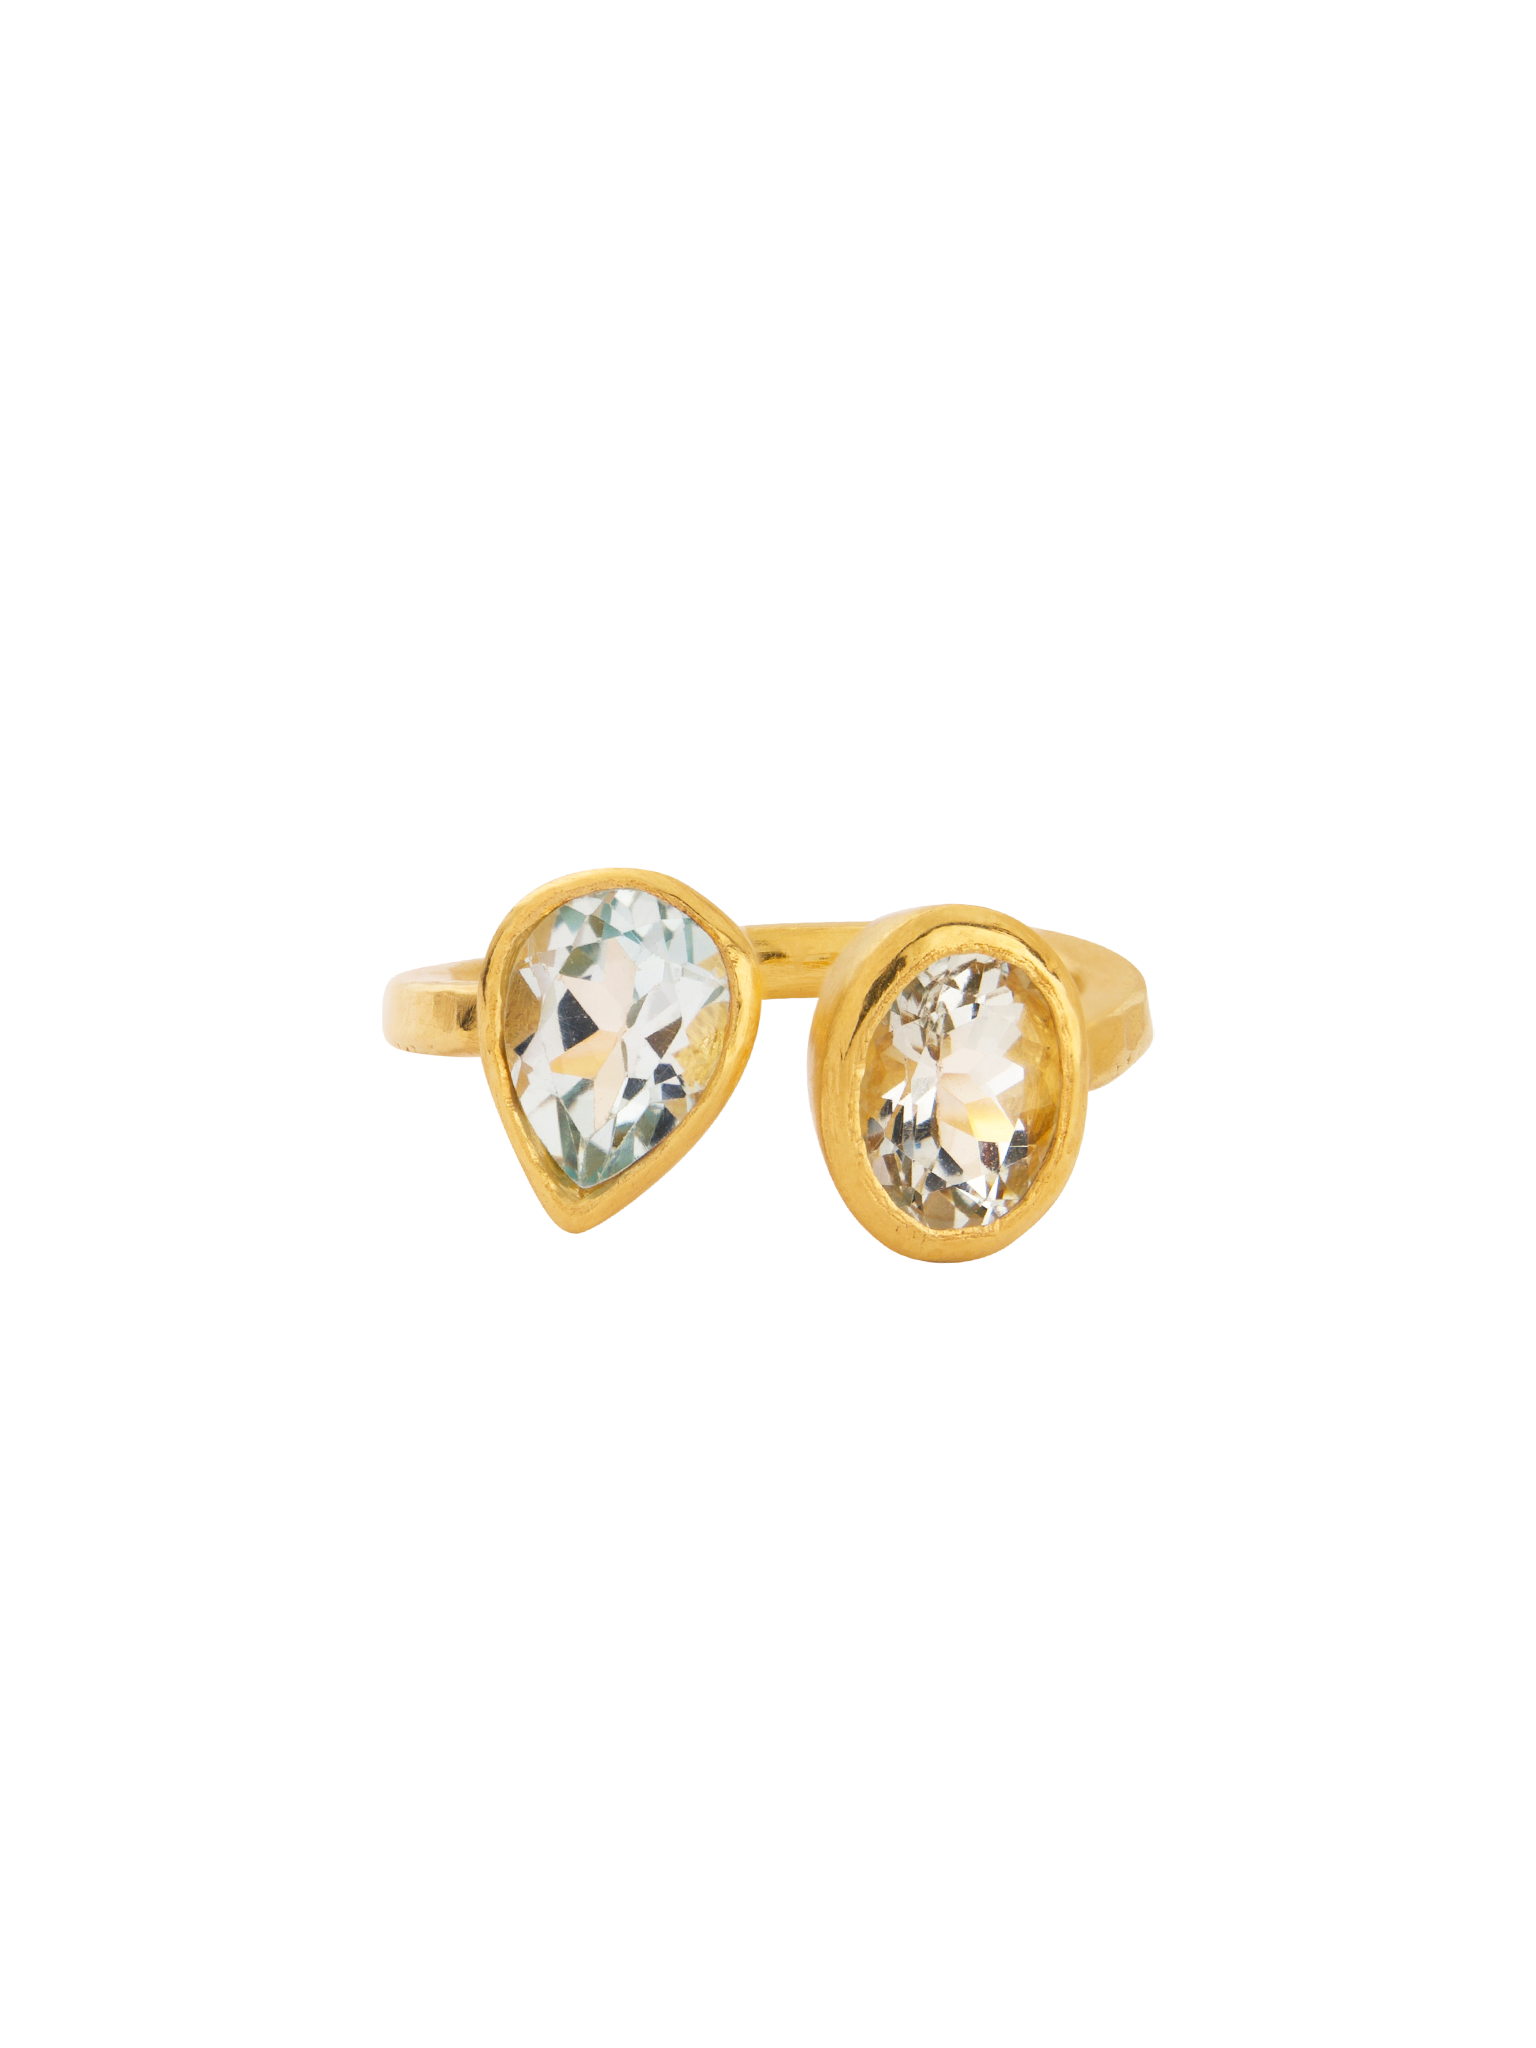 18kt gold vermeil double aquamarine ring by Deborah Murdoch | Finematter